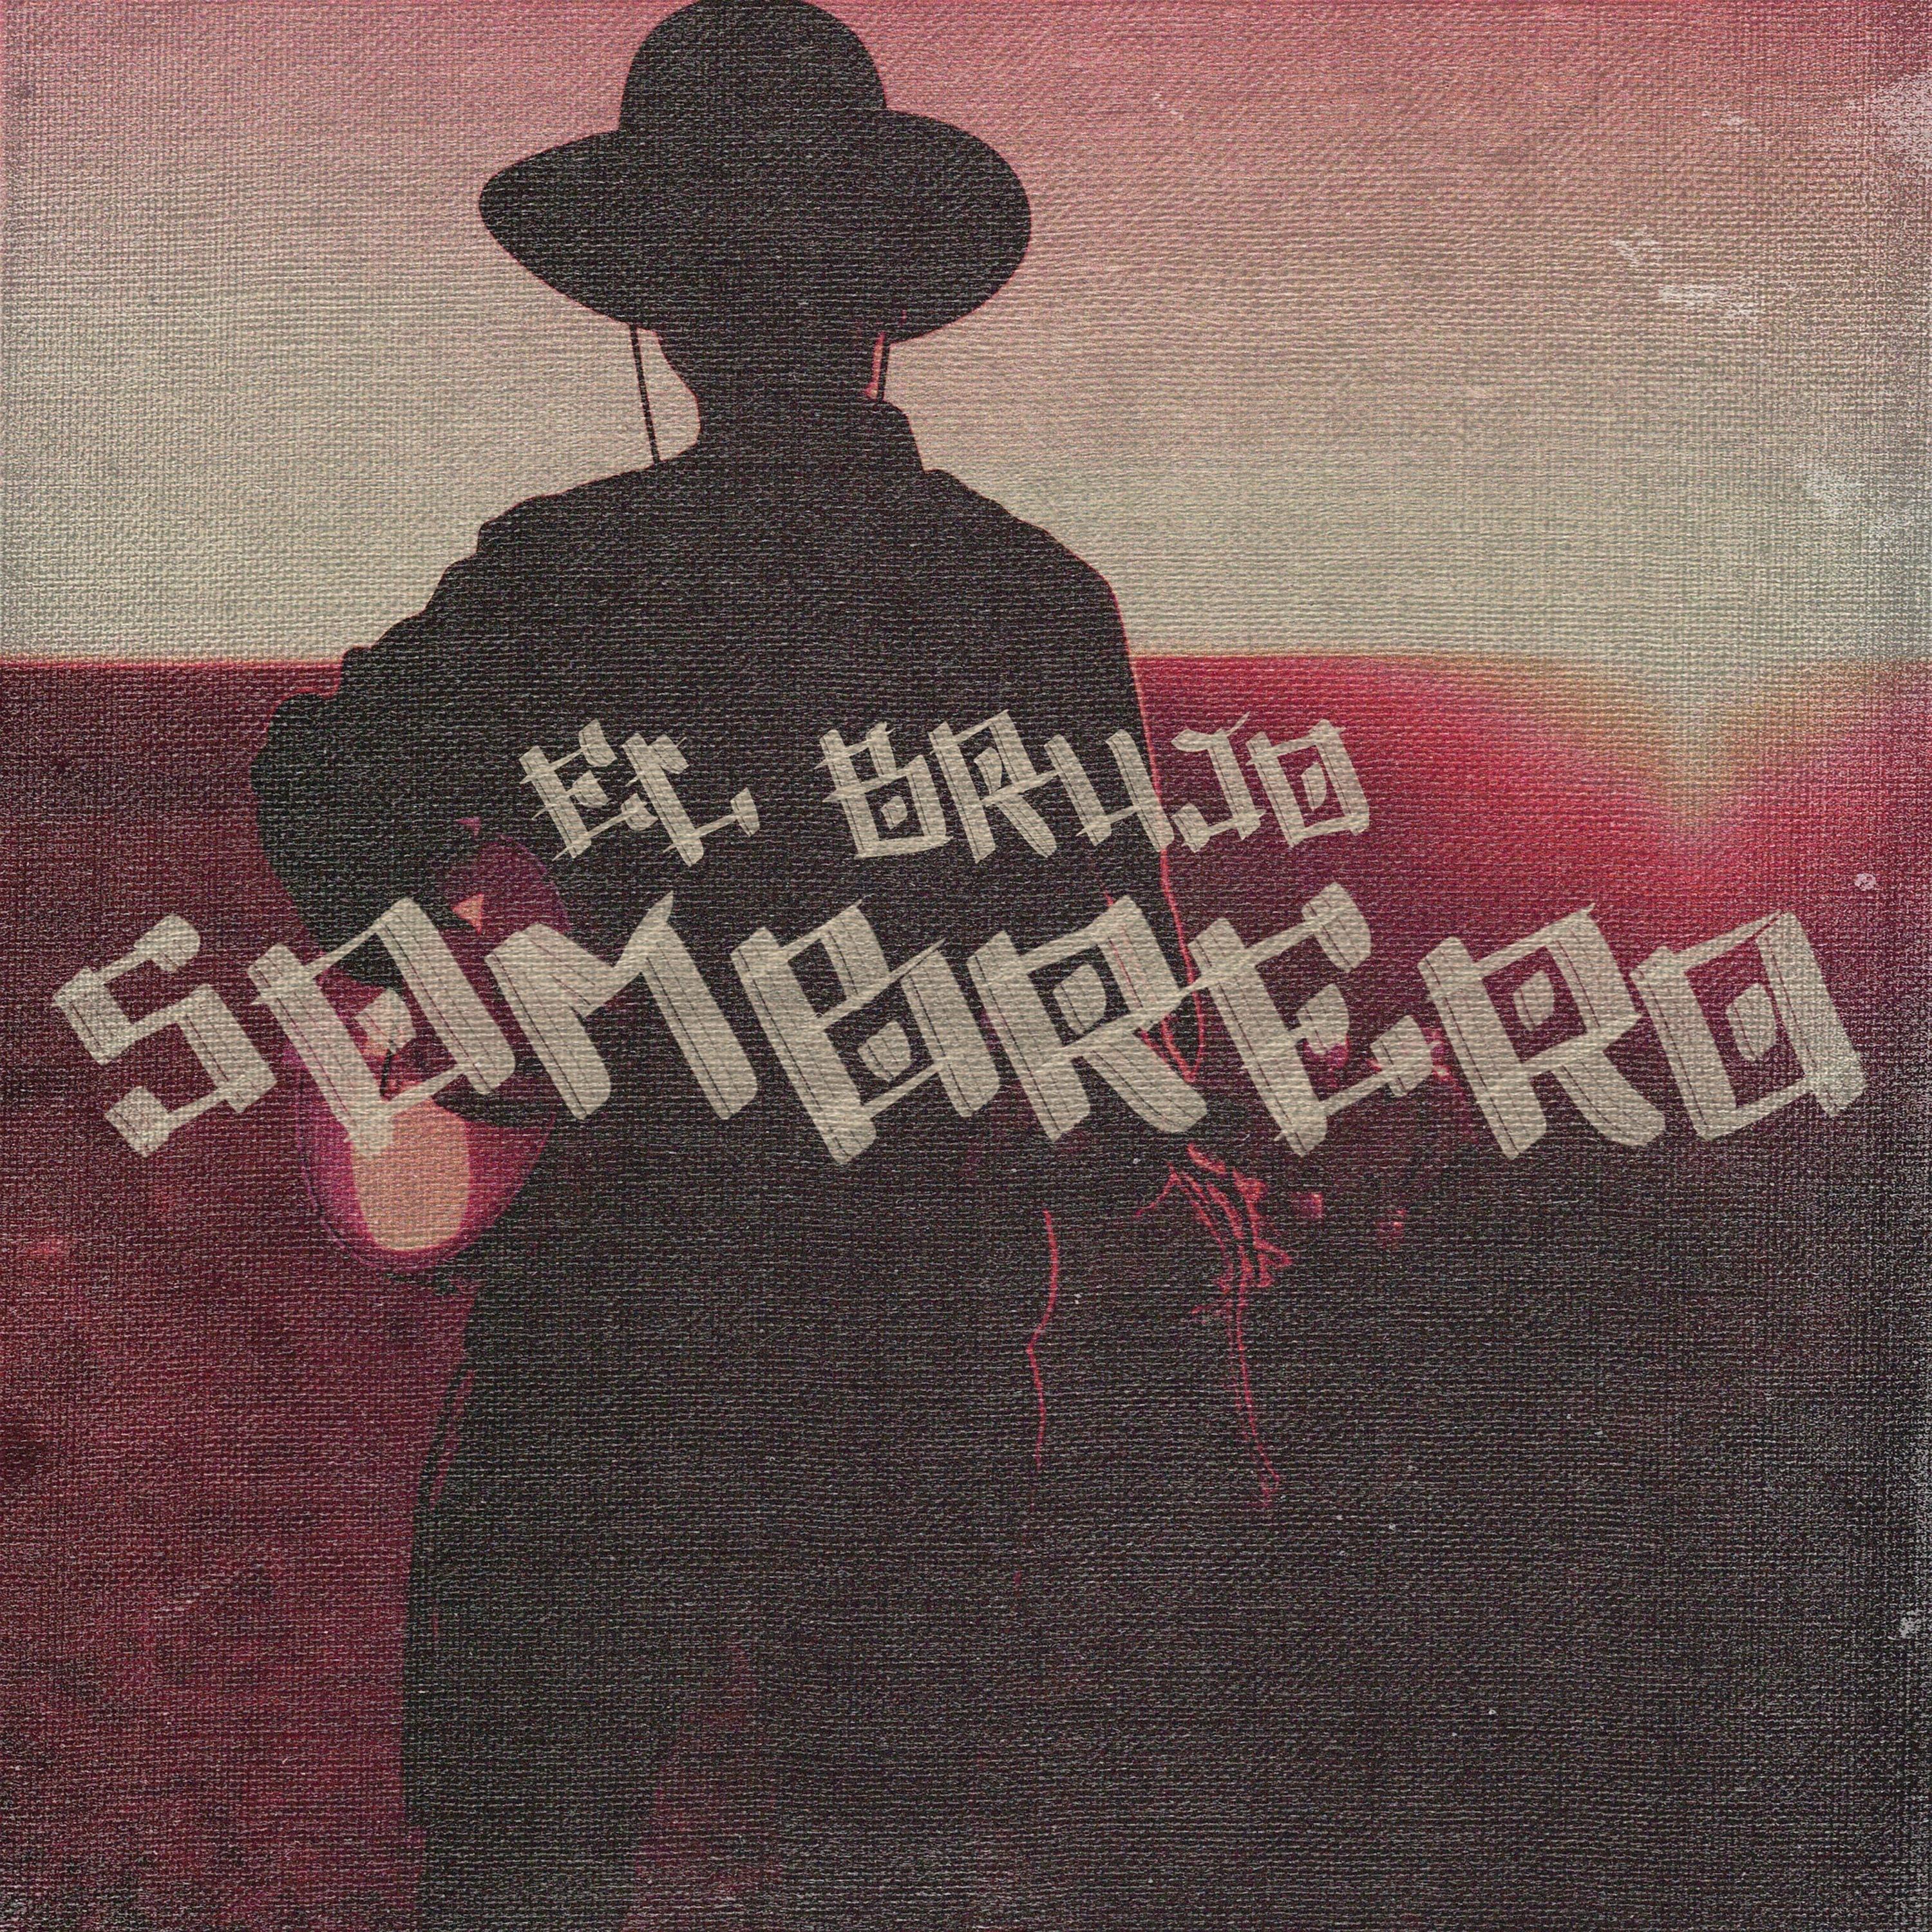 Постер альбома Sombrero